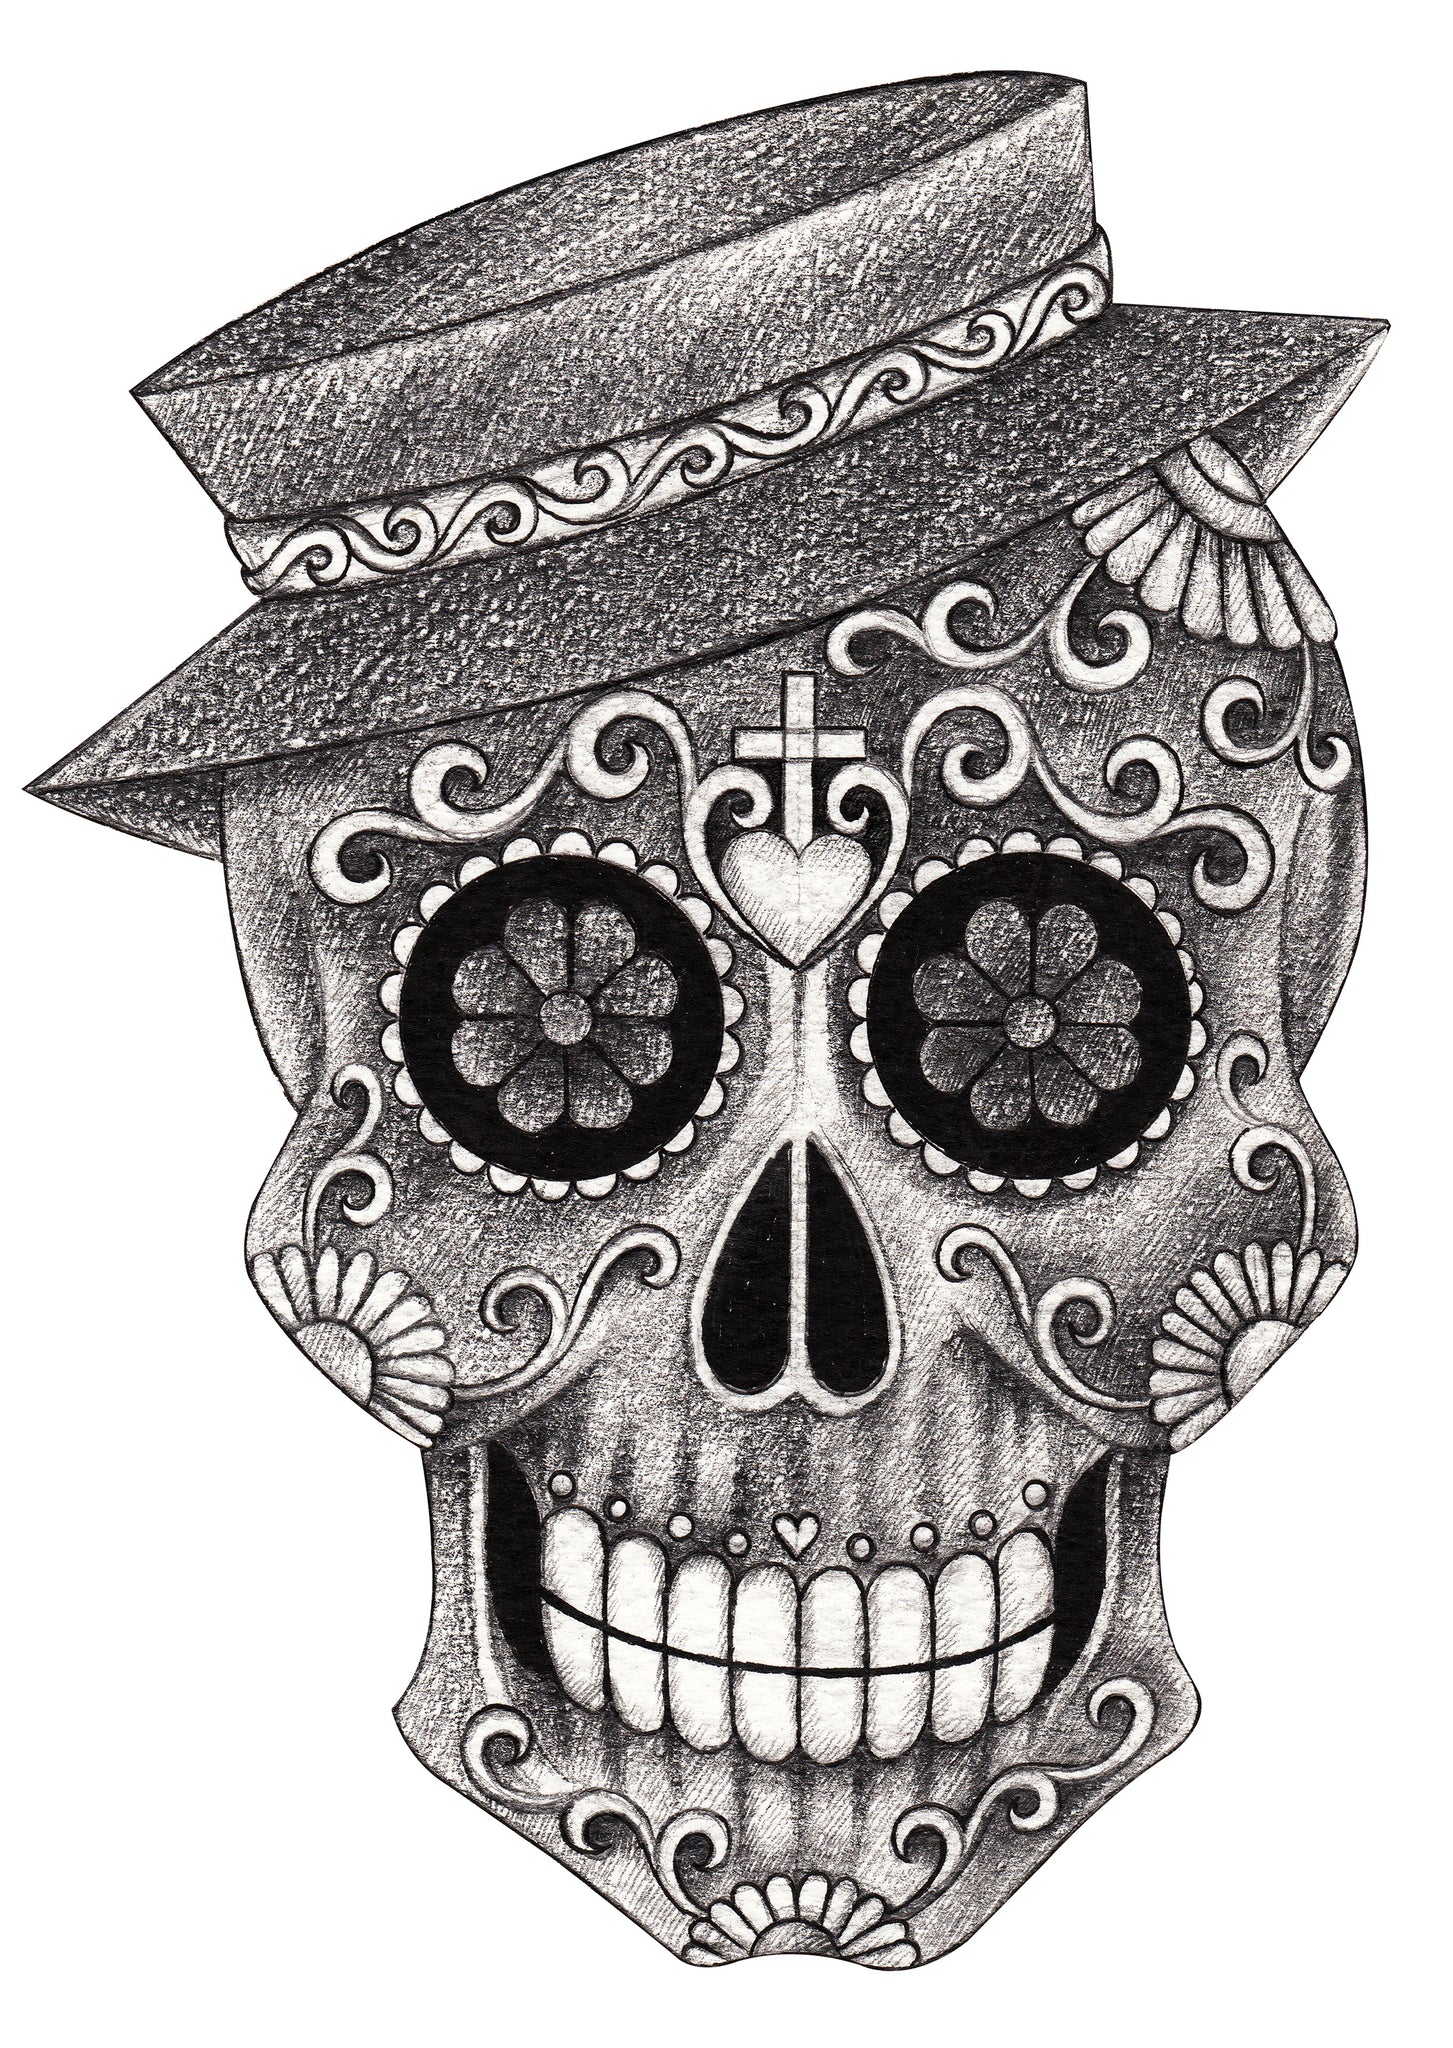 Pencil Sketch Dia De Los Muertos Smiling Skull with Hat Vinyl Decal Sticker